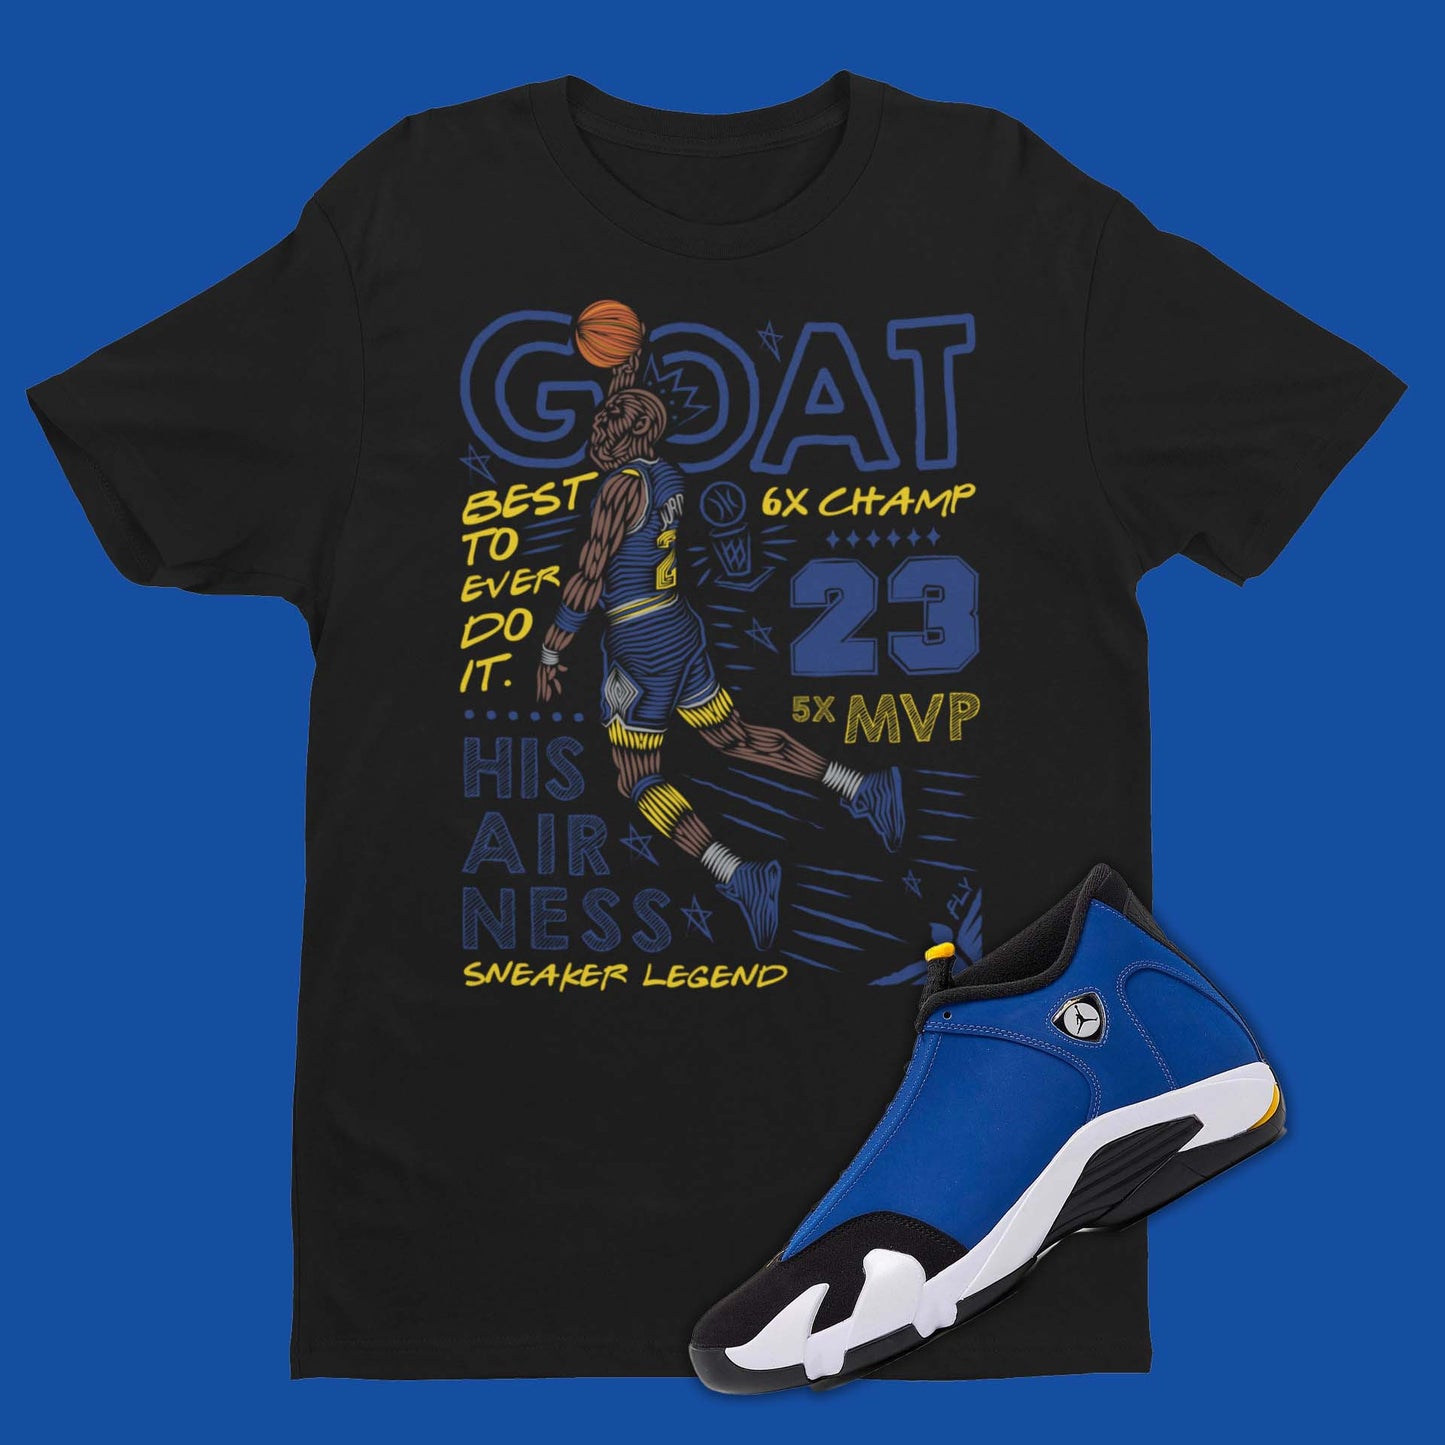 GOAT Shirt Matching Air Jordan 14 Laney in black with michael jordan dunking on front.